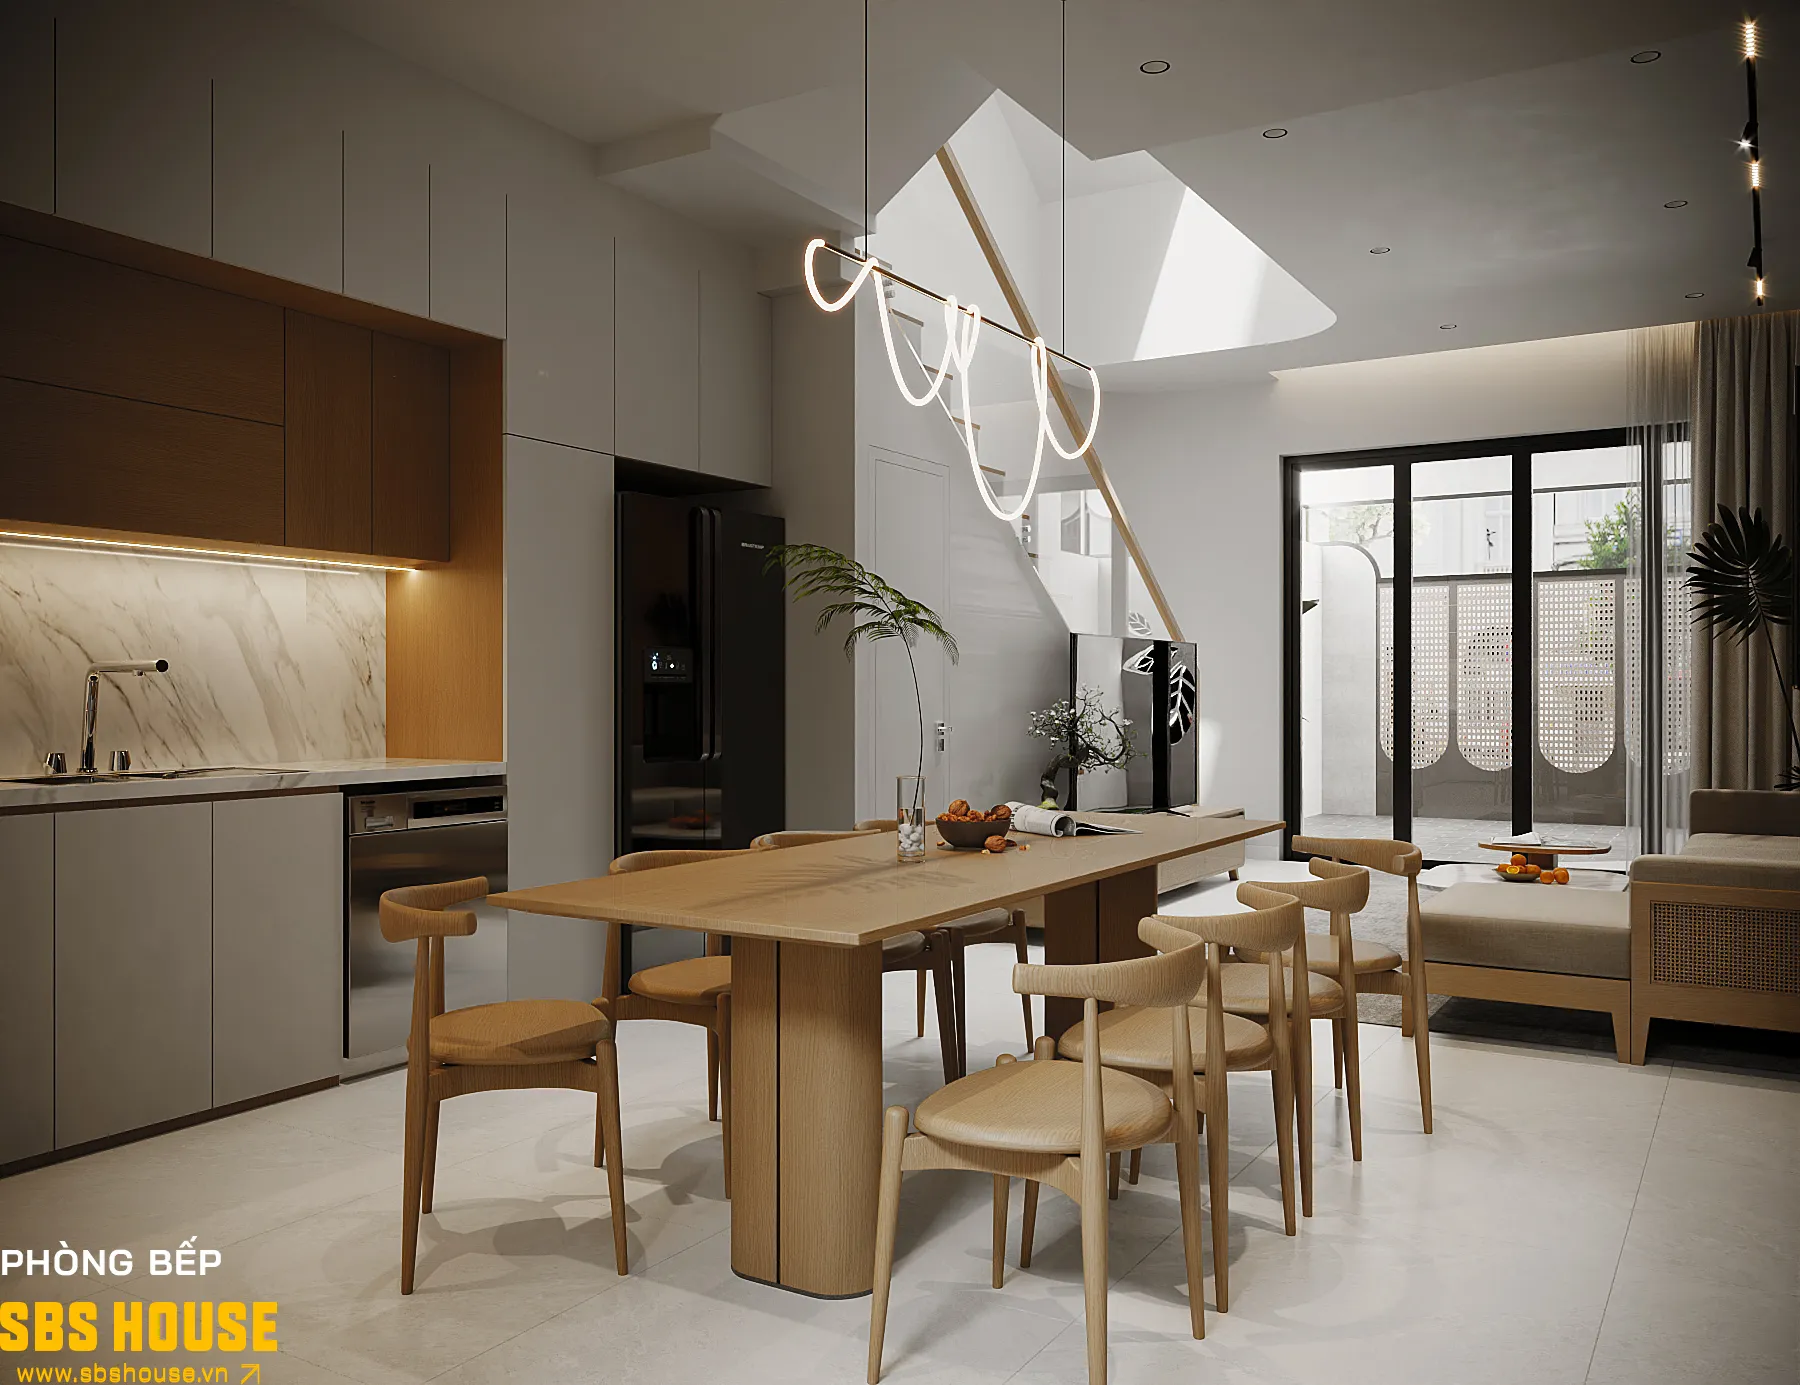 Thiết kế phòng khách liền bếp giúp tối ưu diện tích nhà lệch tầng 5x15